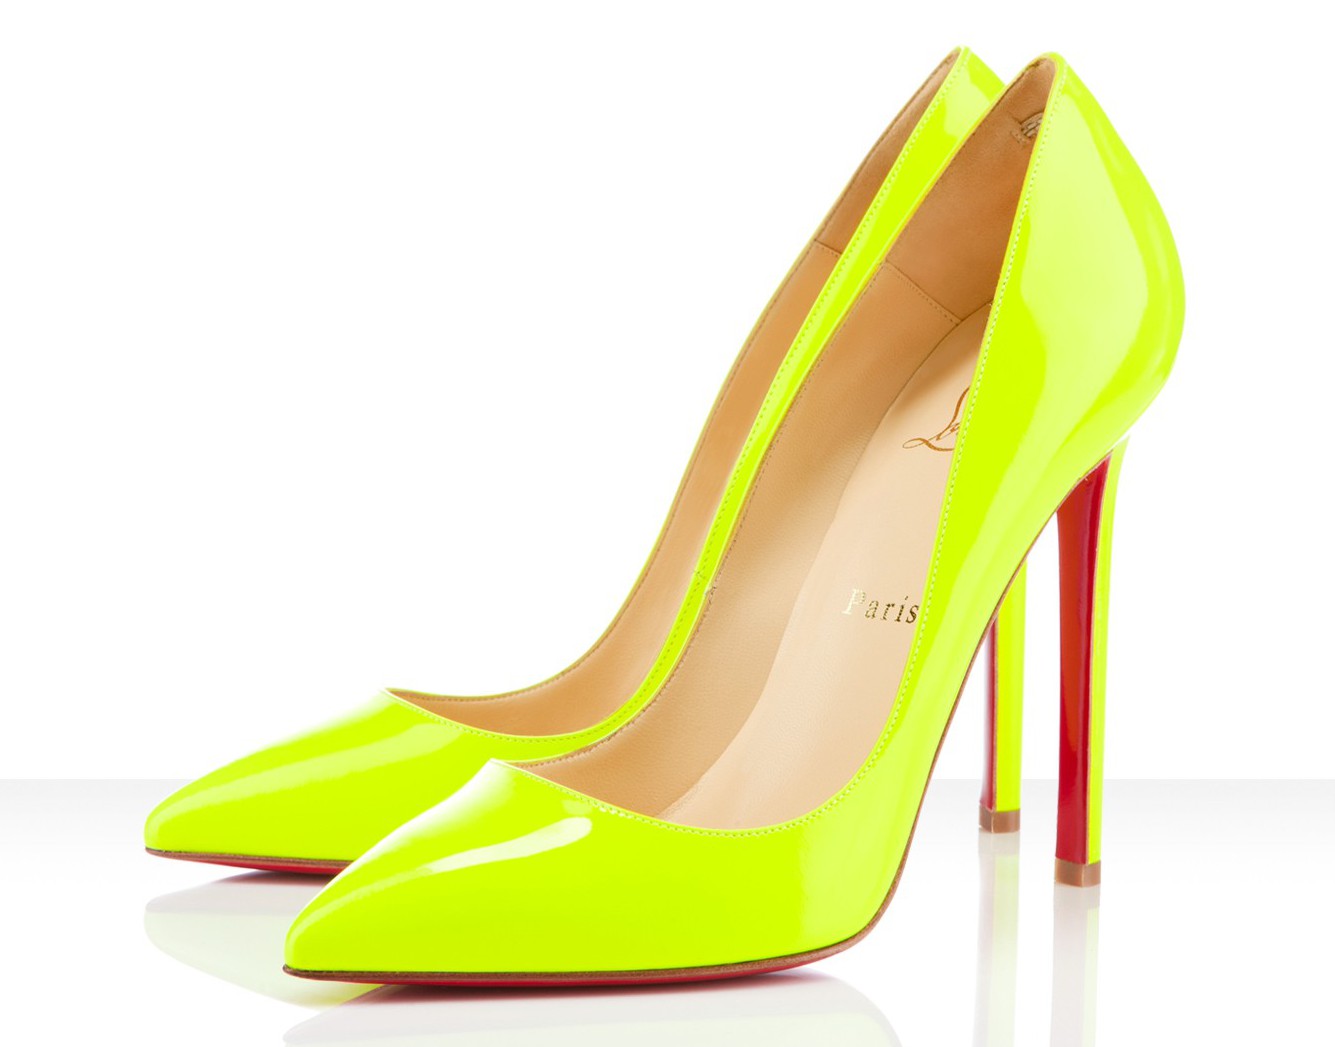 fluro yellow heels